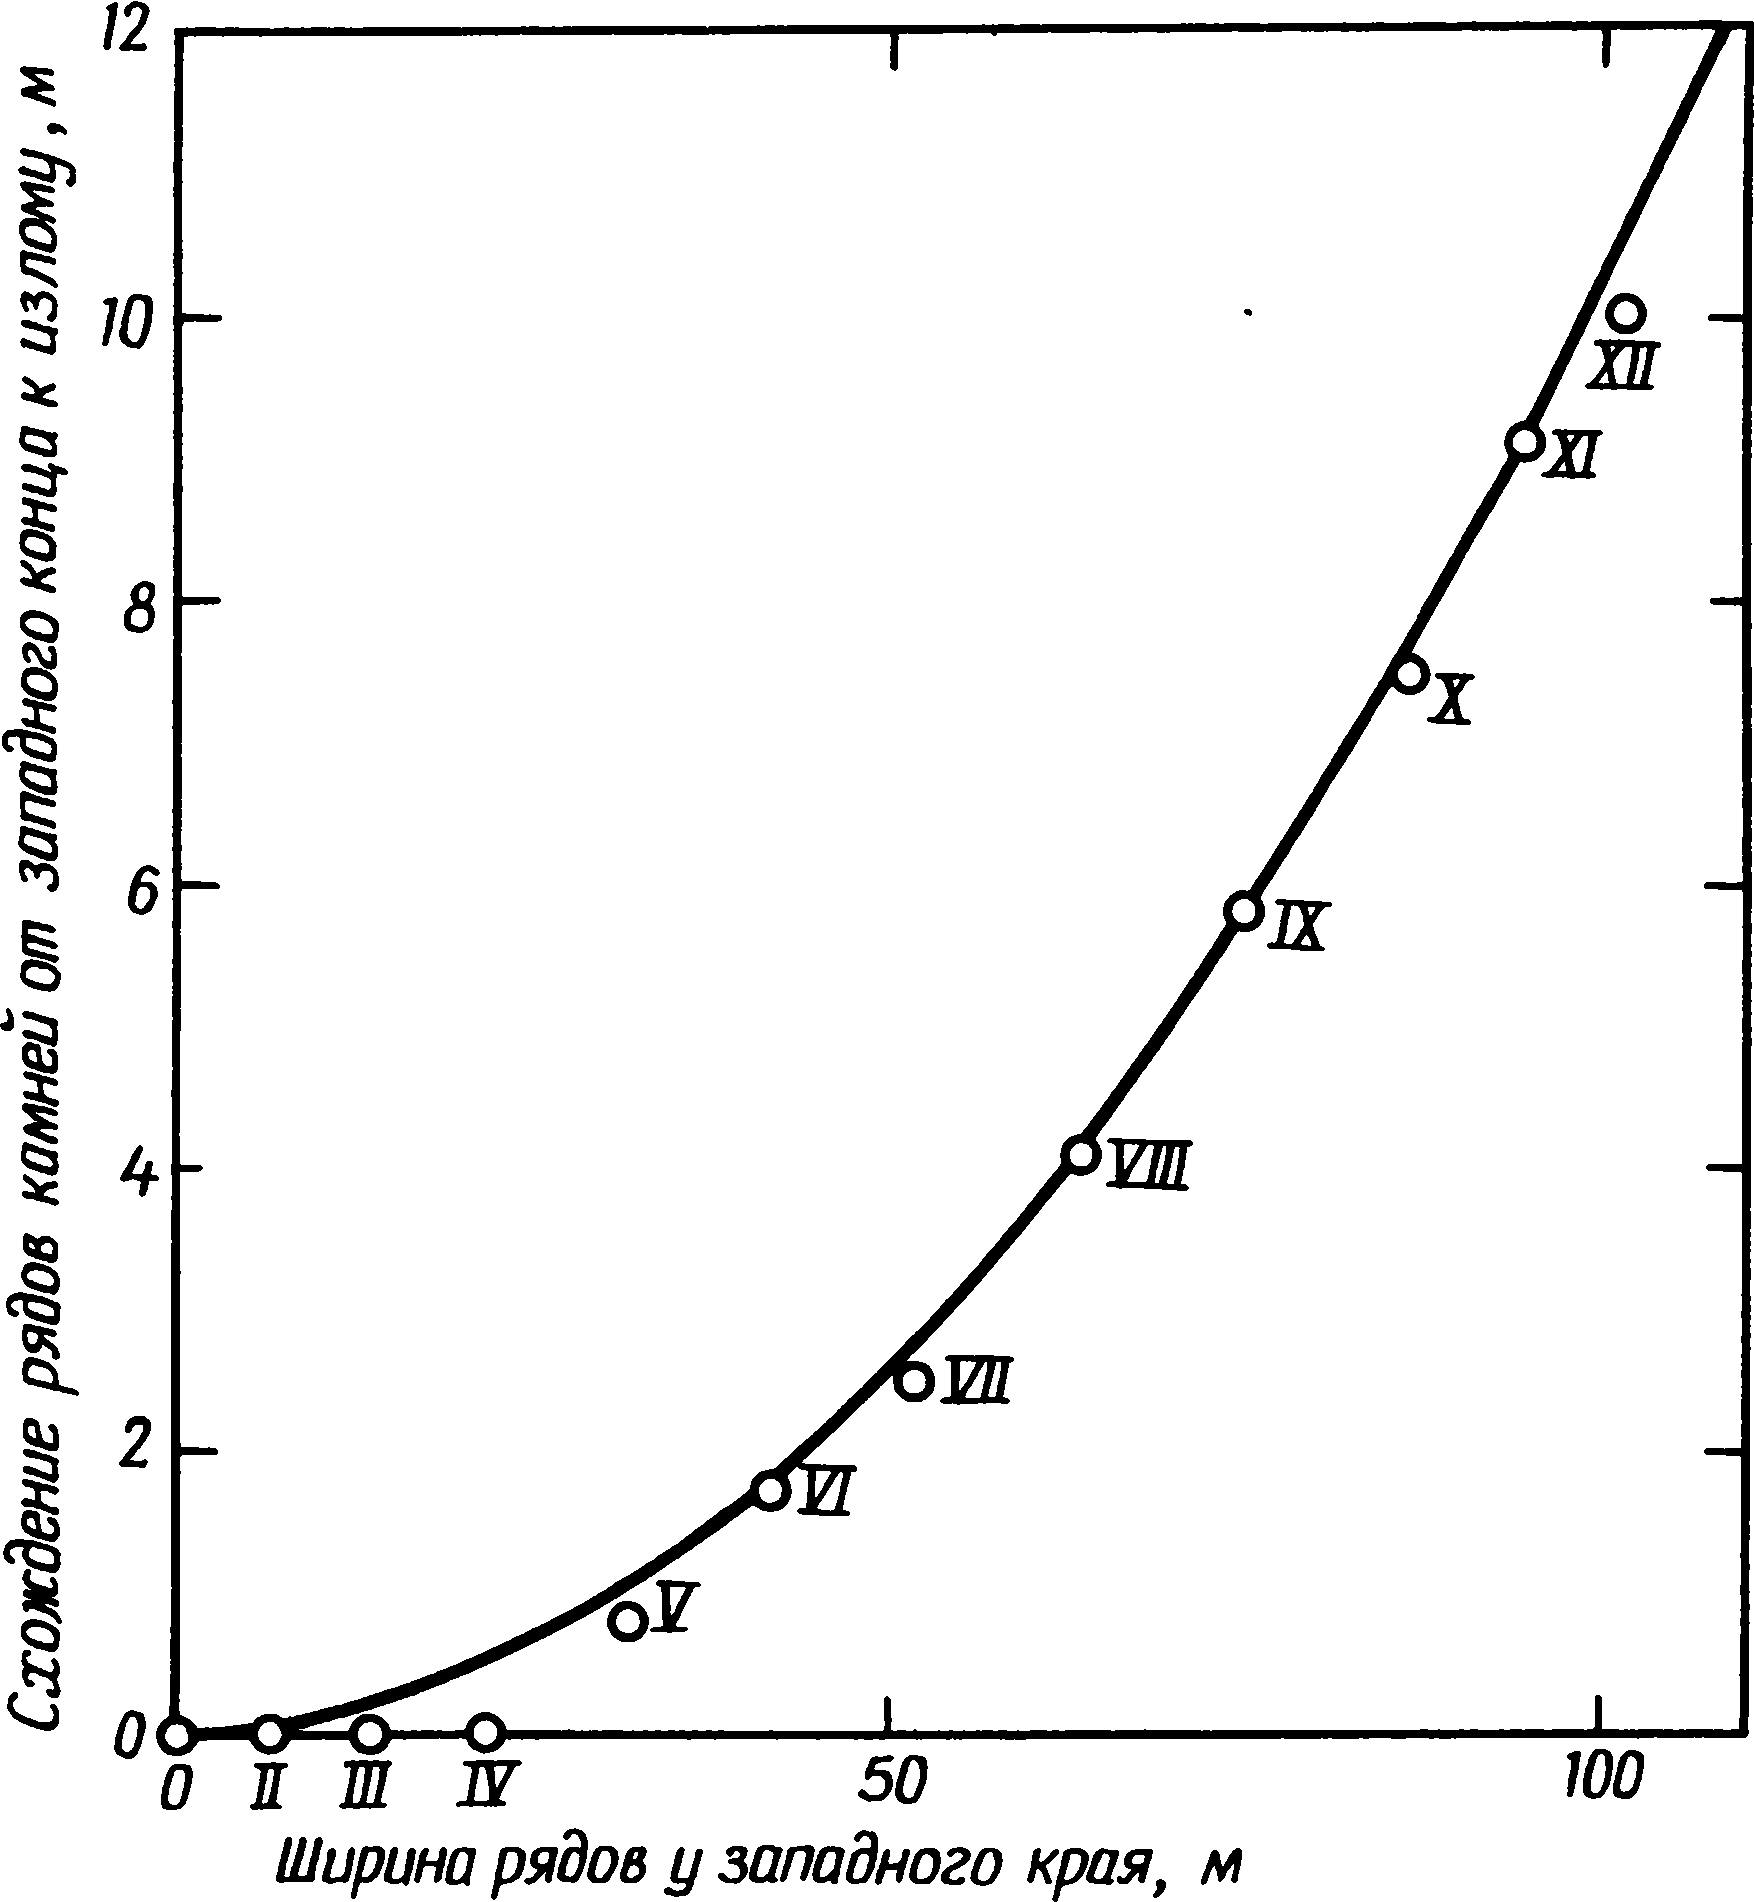 Рис. 8.4. Параболическое соотношение, заложенное в рядах камней в Ле-Менеке. Кривая описывается уравнением z = 10,2 хw2/104